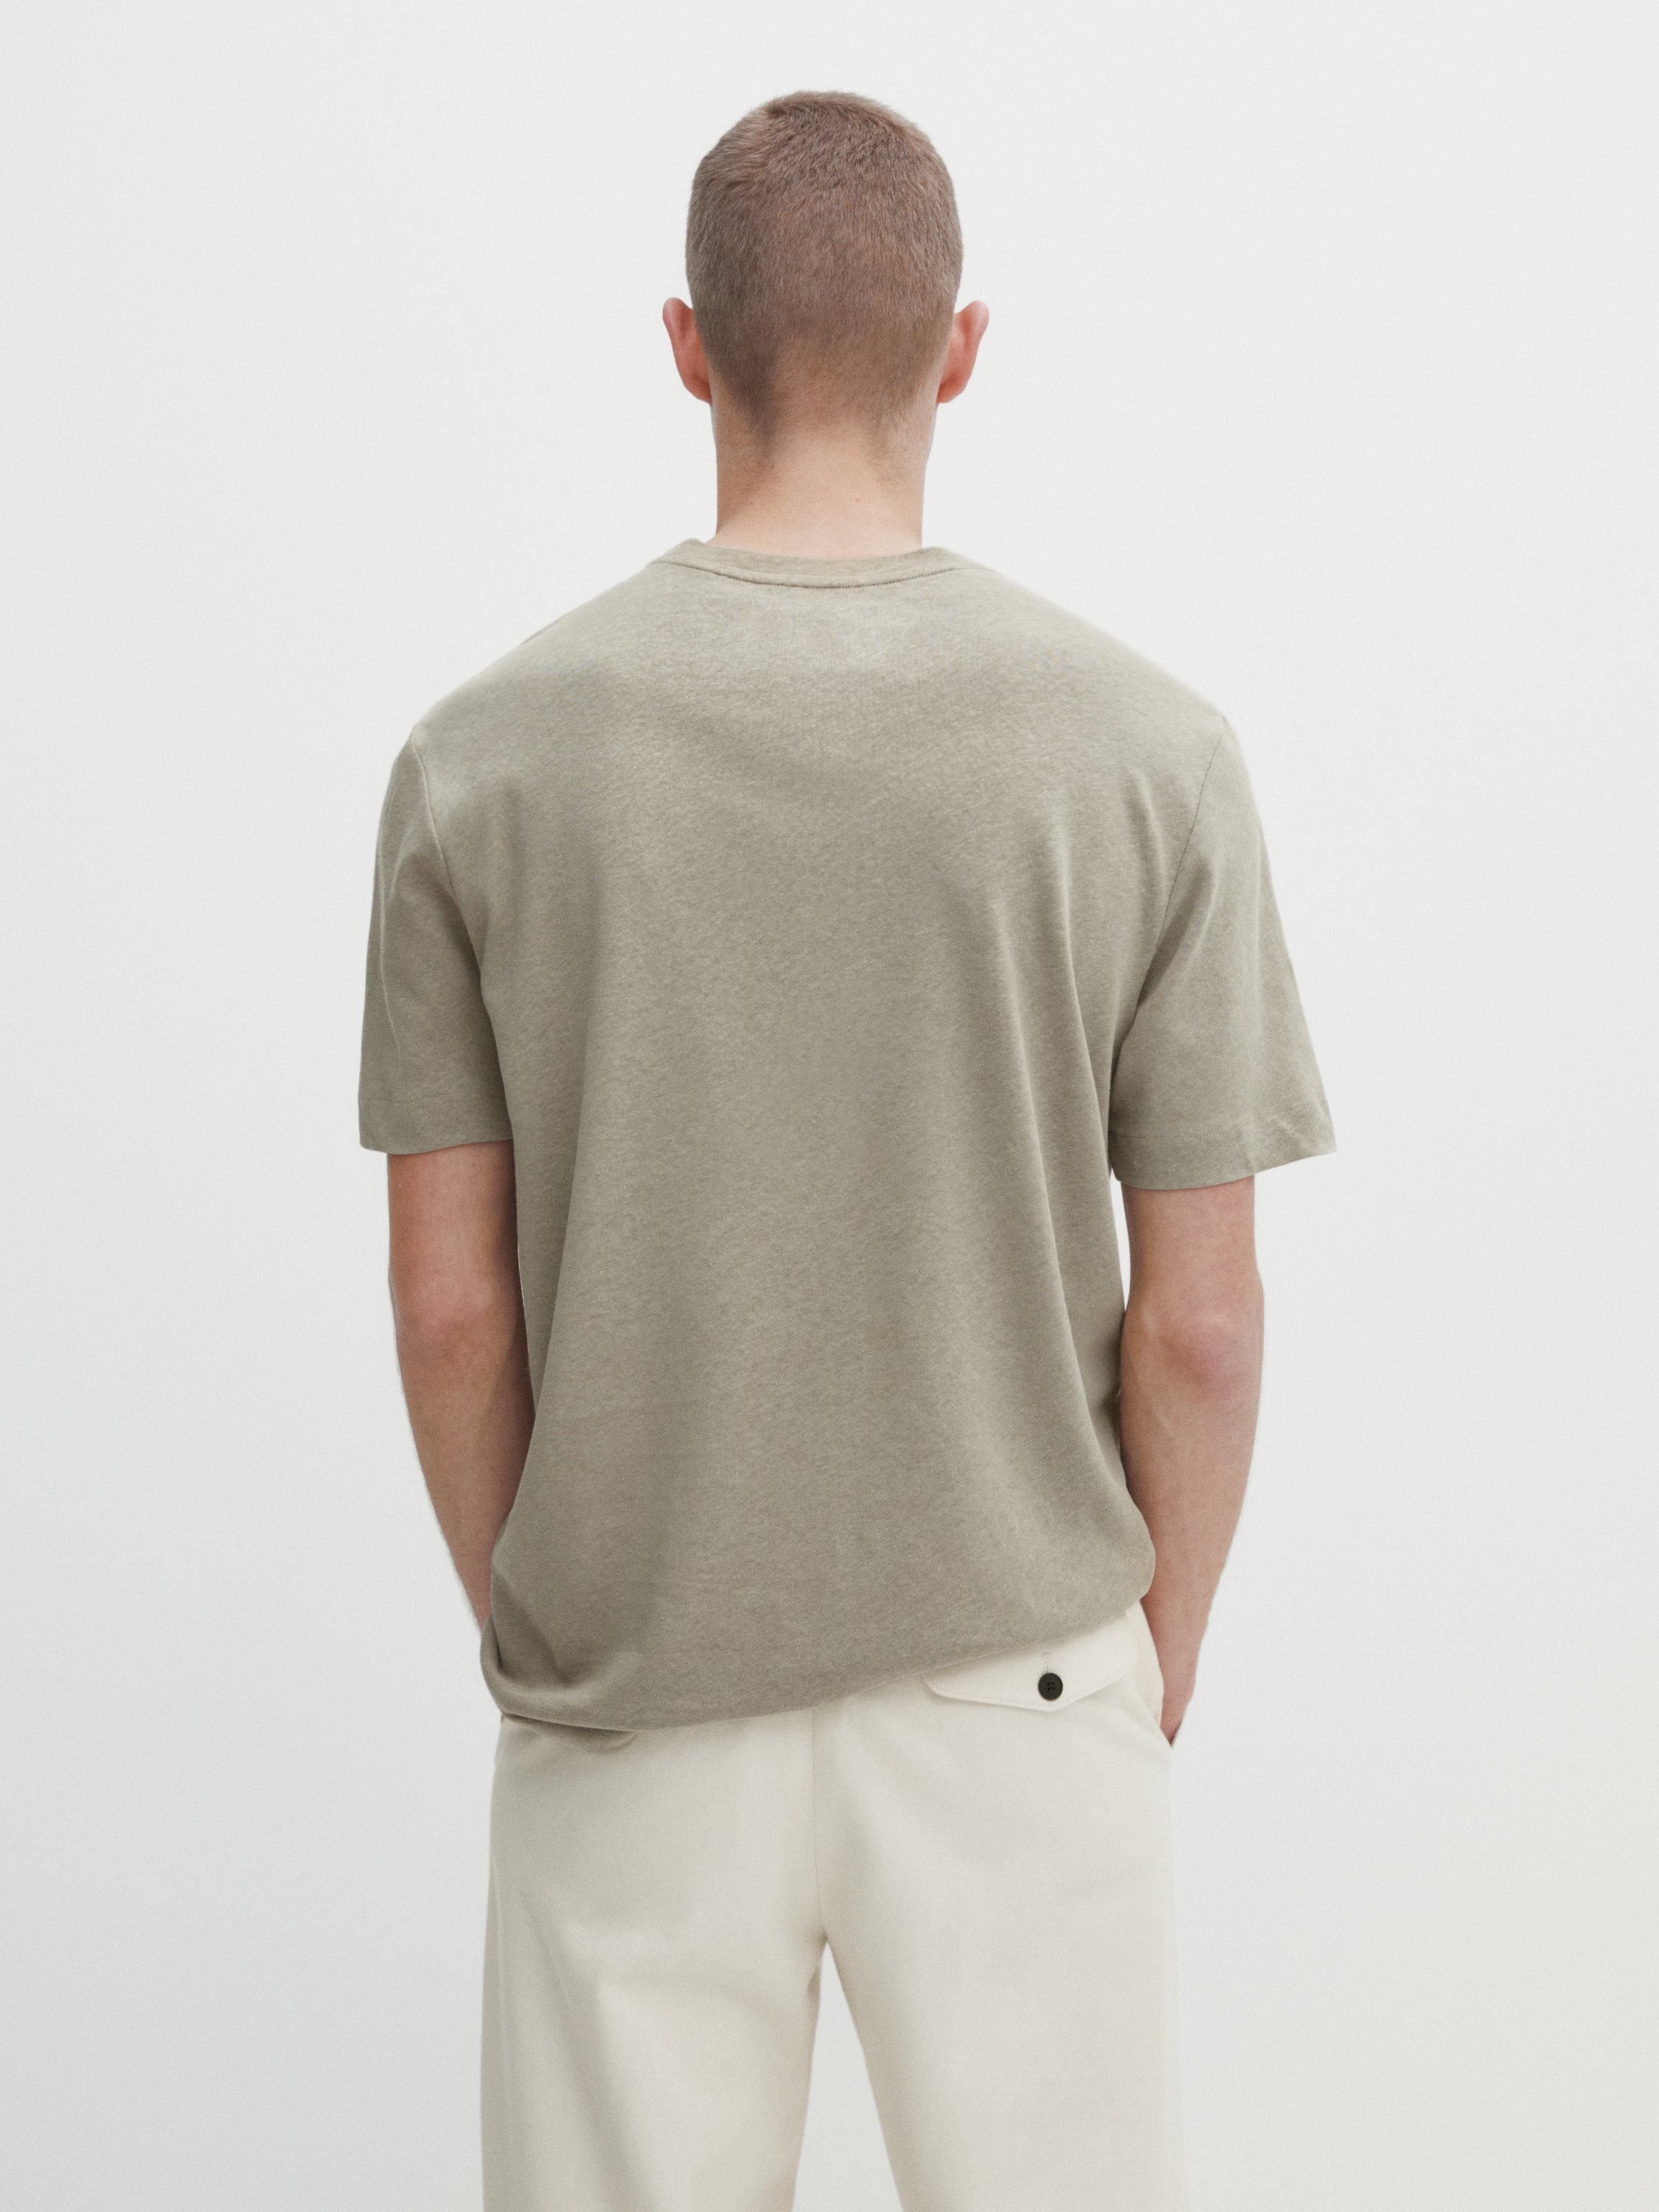 Short sleeve linen and cotton blend T-shirt